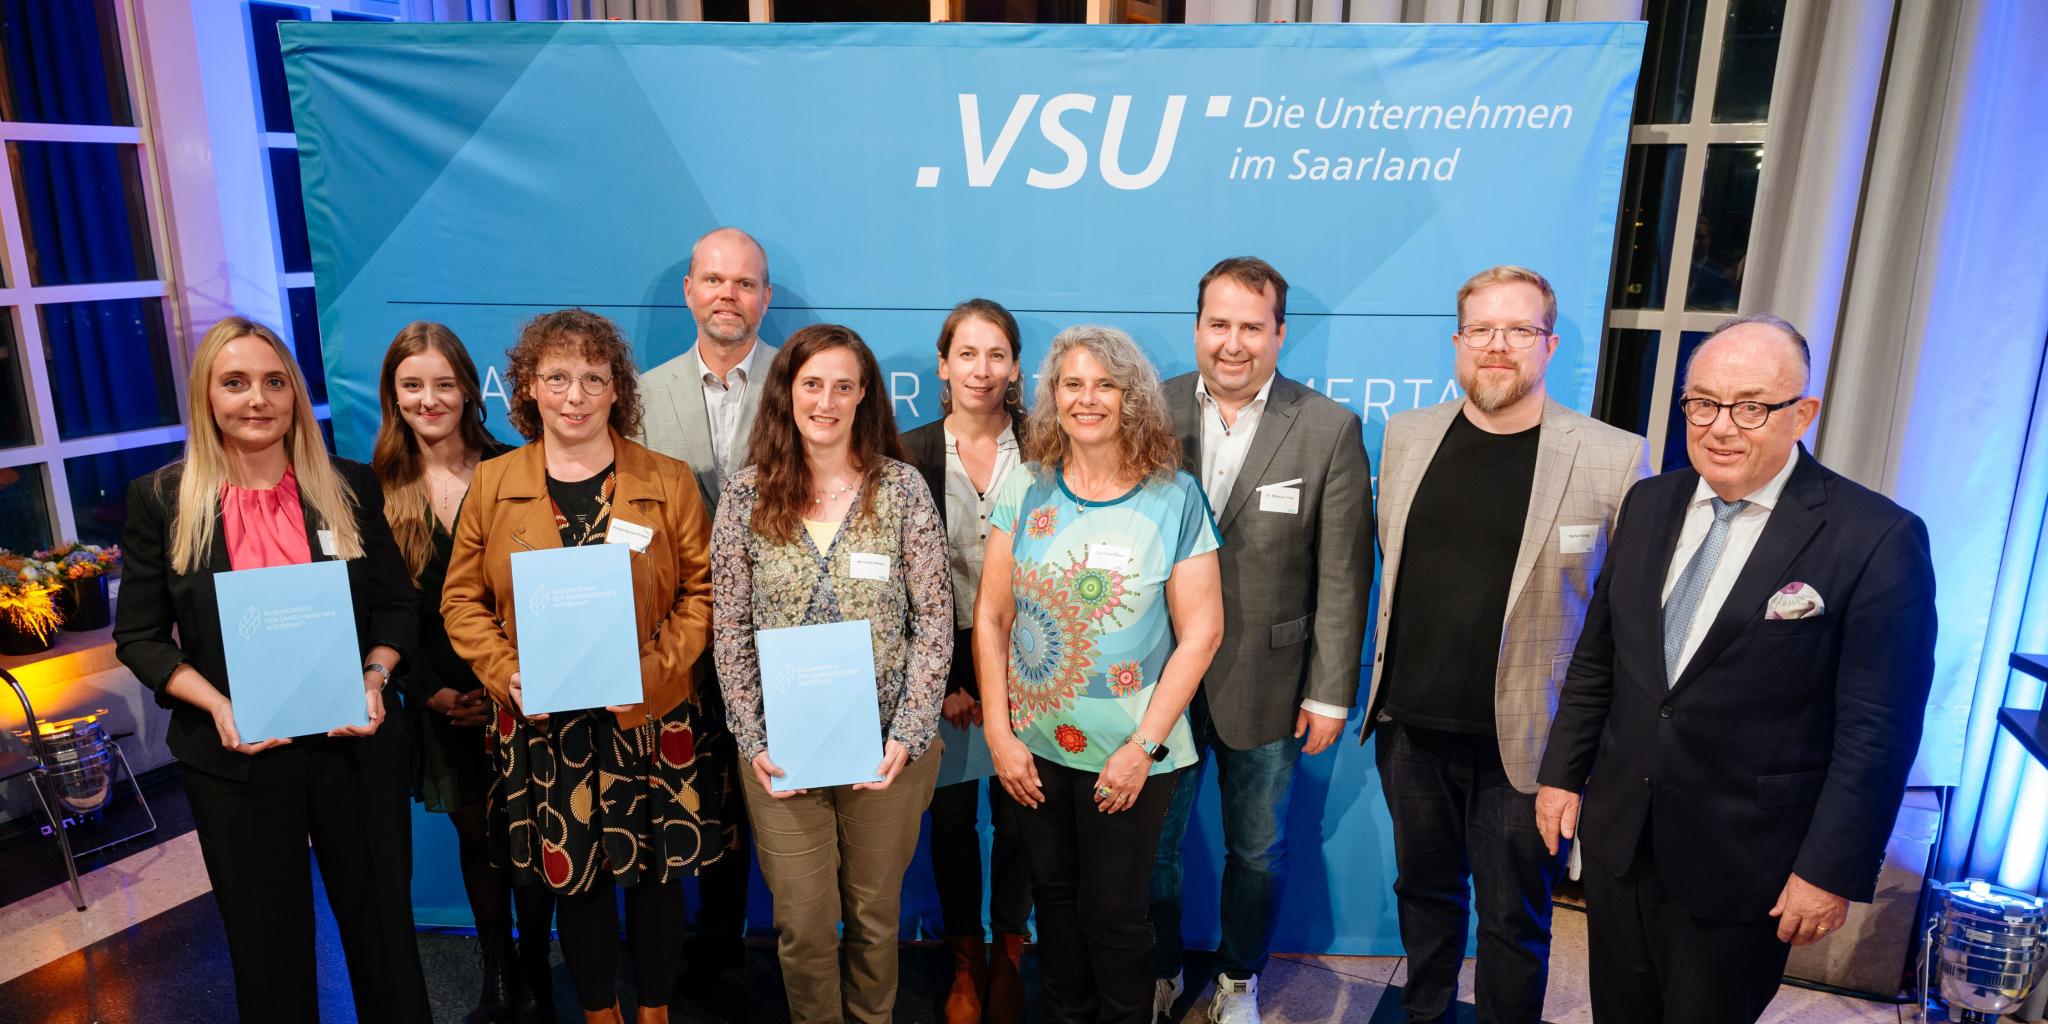 Sechs Lehrerinnen und Lehrer - darunter Lisa Dressel von der Nikolaus-Groß-Gemeinschaftsschule in Lebach (links im Bild) - sind von der VSU mit dem Bildungspreis der saarländischen Wirtschaft ausgezeichnet worden.